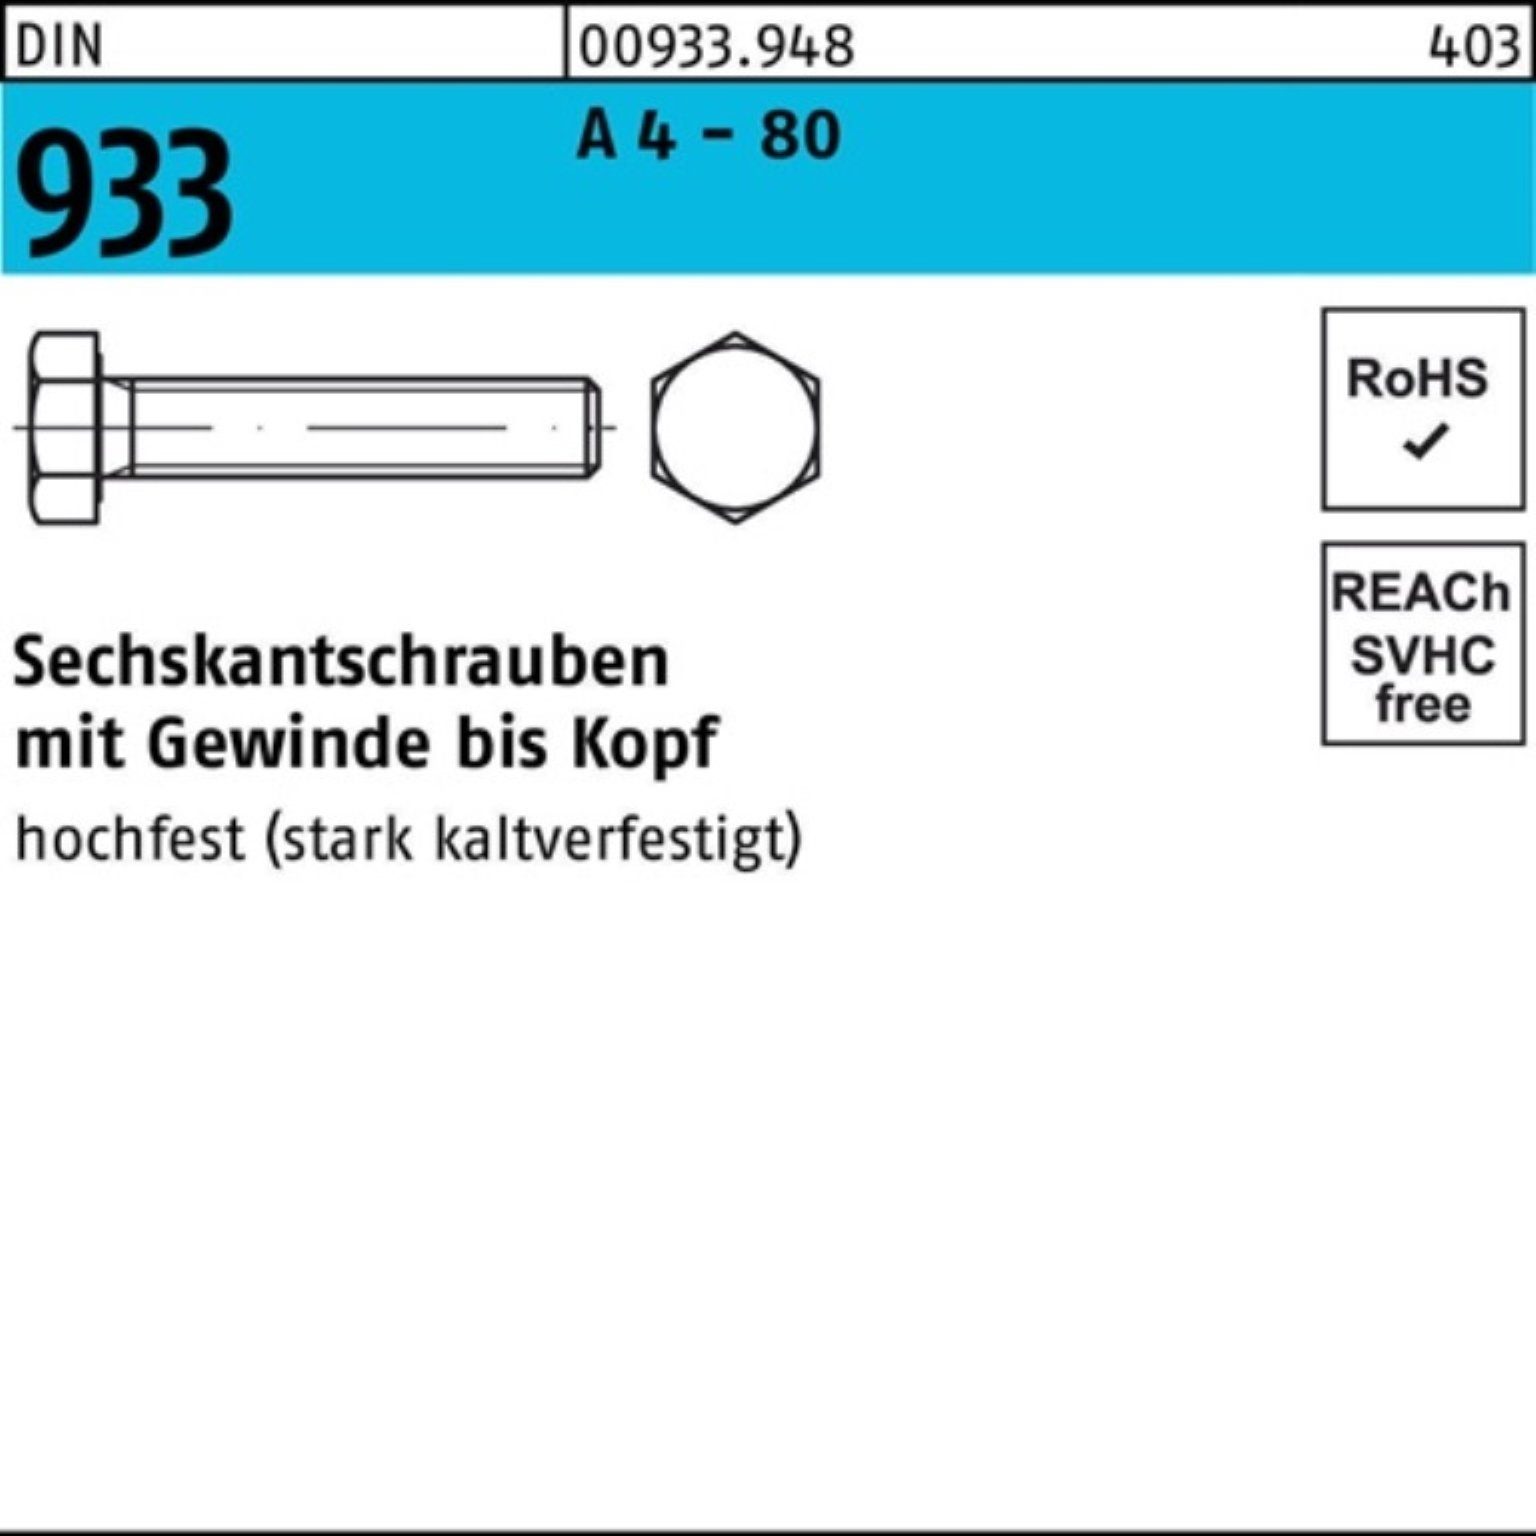 Reyher Sechskantschraube 100er Pack Sechskantschraube DIN 933 VG M10x 150 A 4 - 80 1 Stück DIN